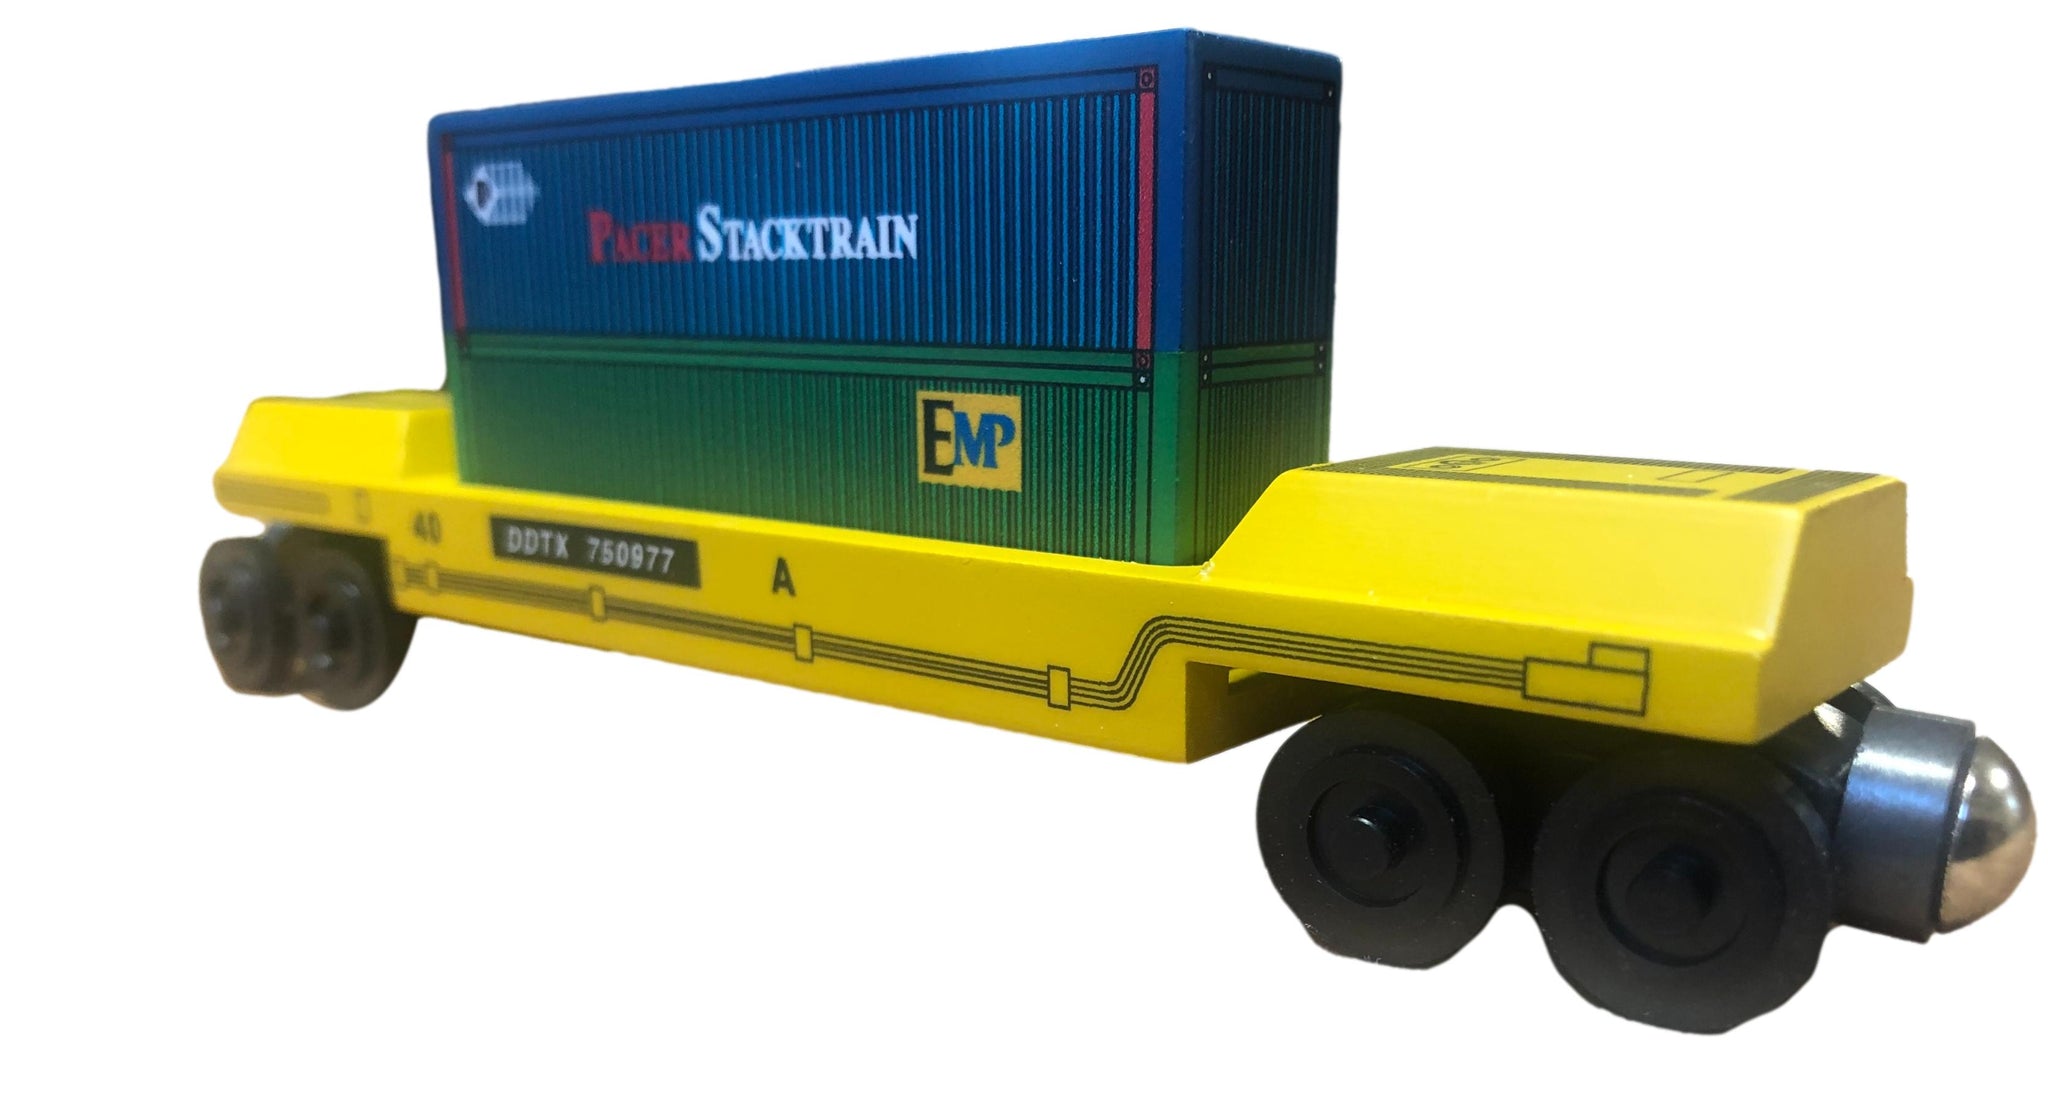 Pacer Stacktrain Emp Doublestack Intermodal Car